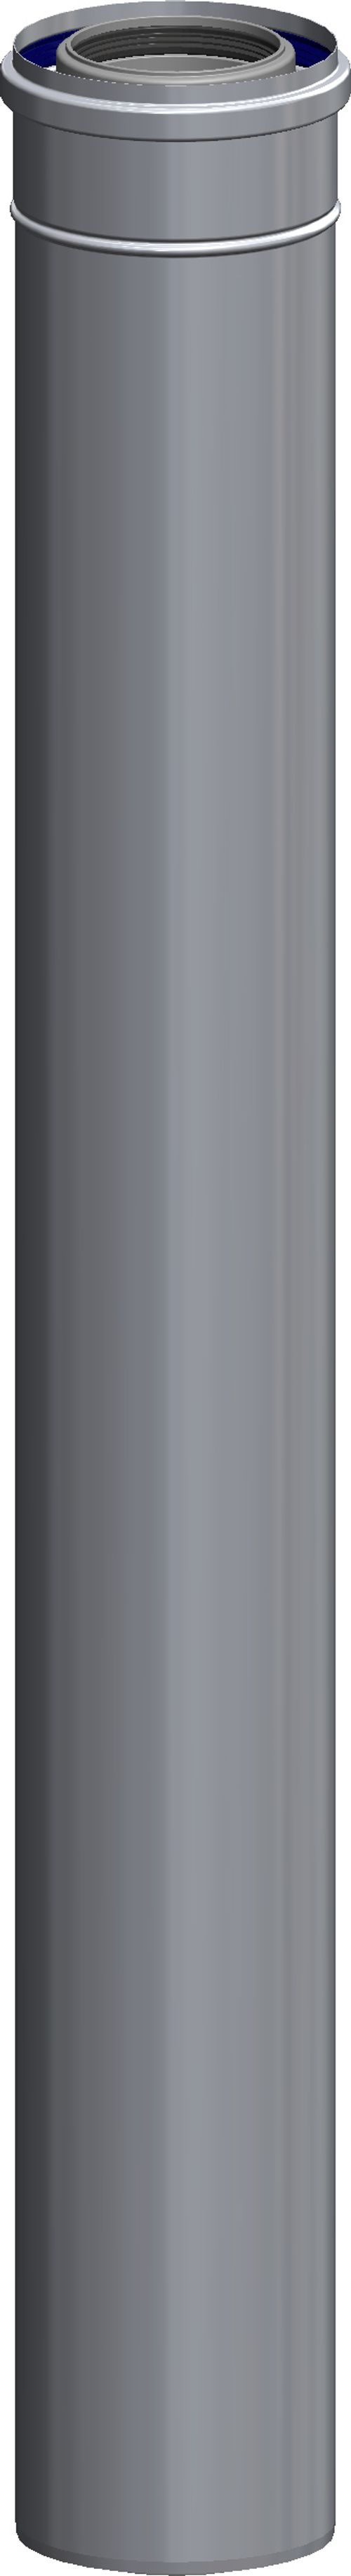 ATEC-Rohr-konzentrisch-silber-DN-80-125-955m-79001419